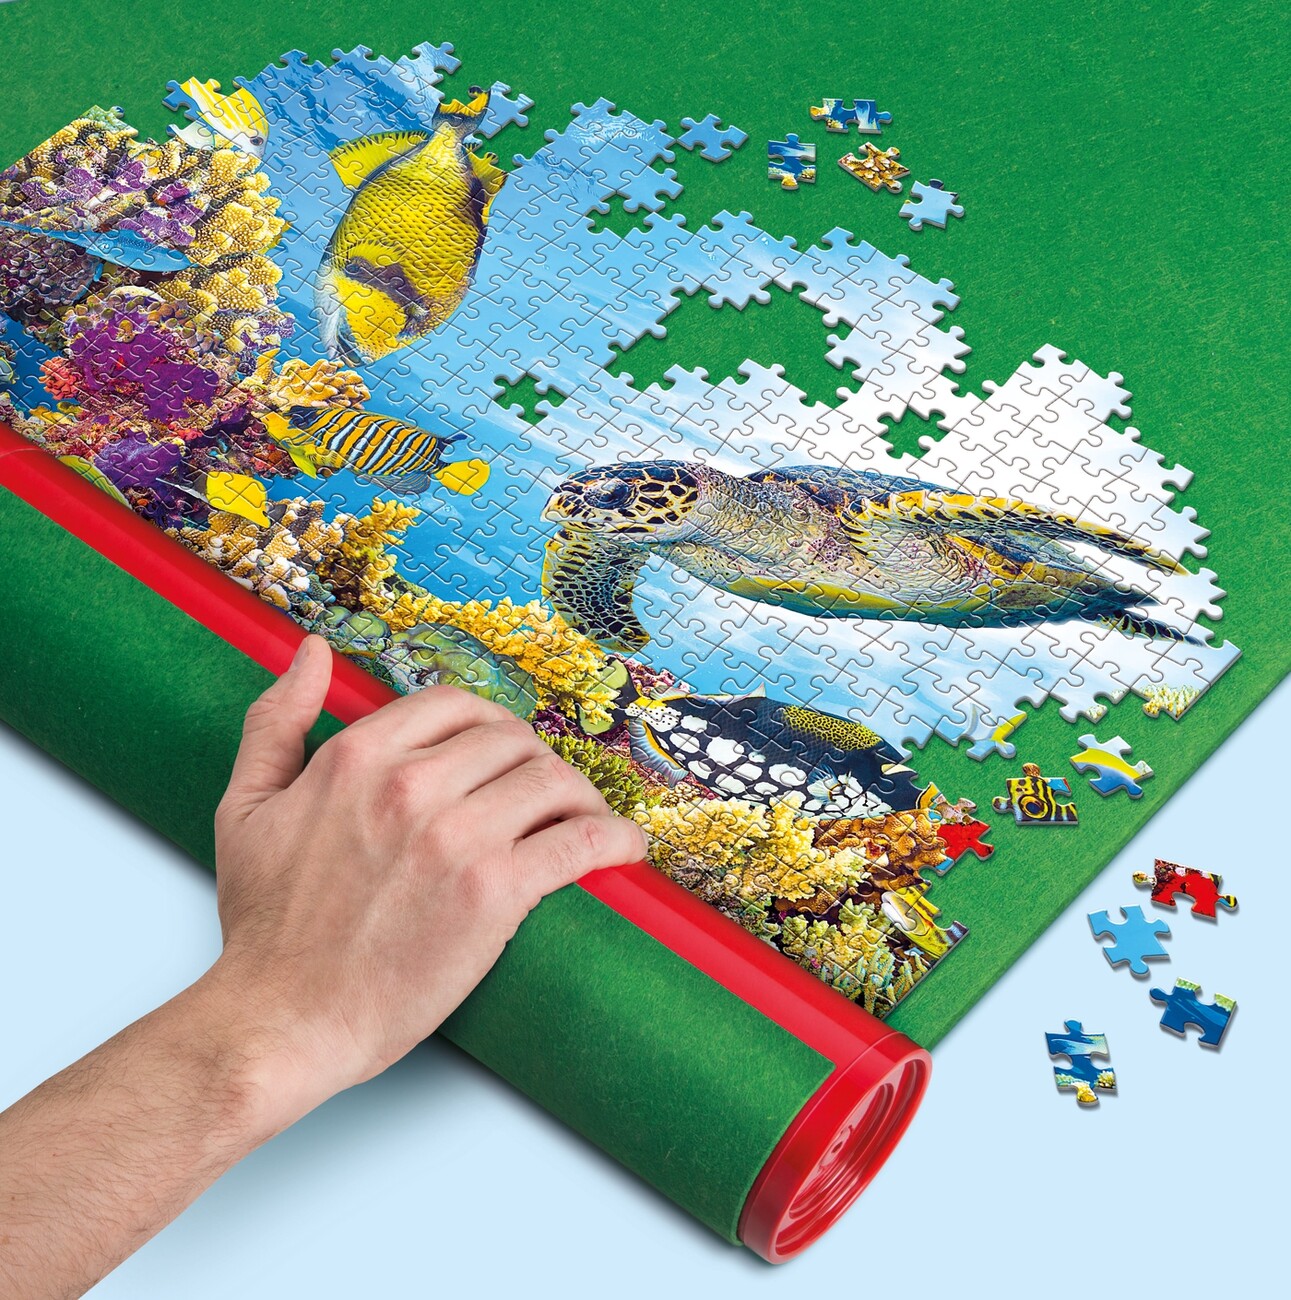 Clementoni Tapete mantel manta para Puzzle de 500 1000 2000 piezas Color  Verde - AliExpress, tapete para puzzle 